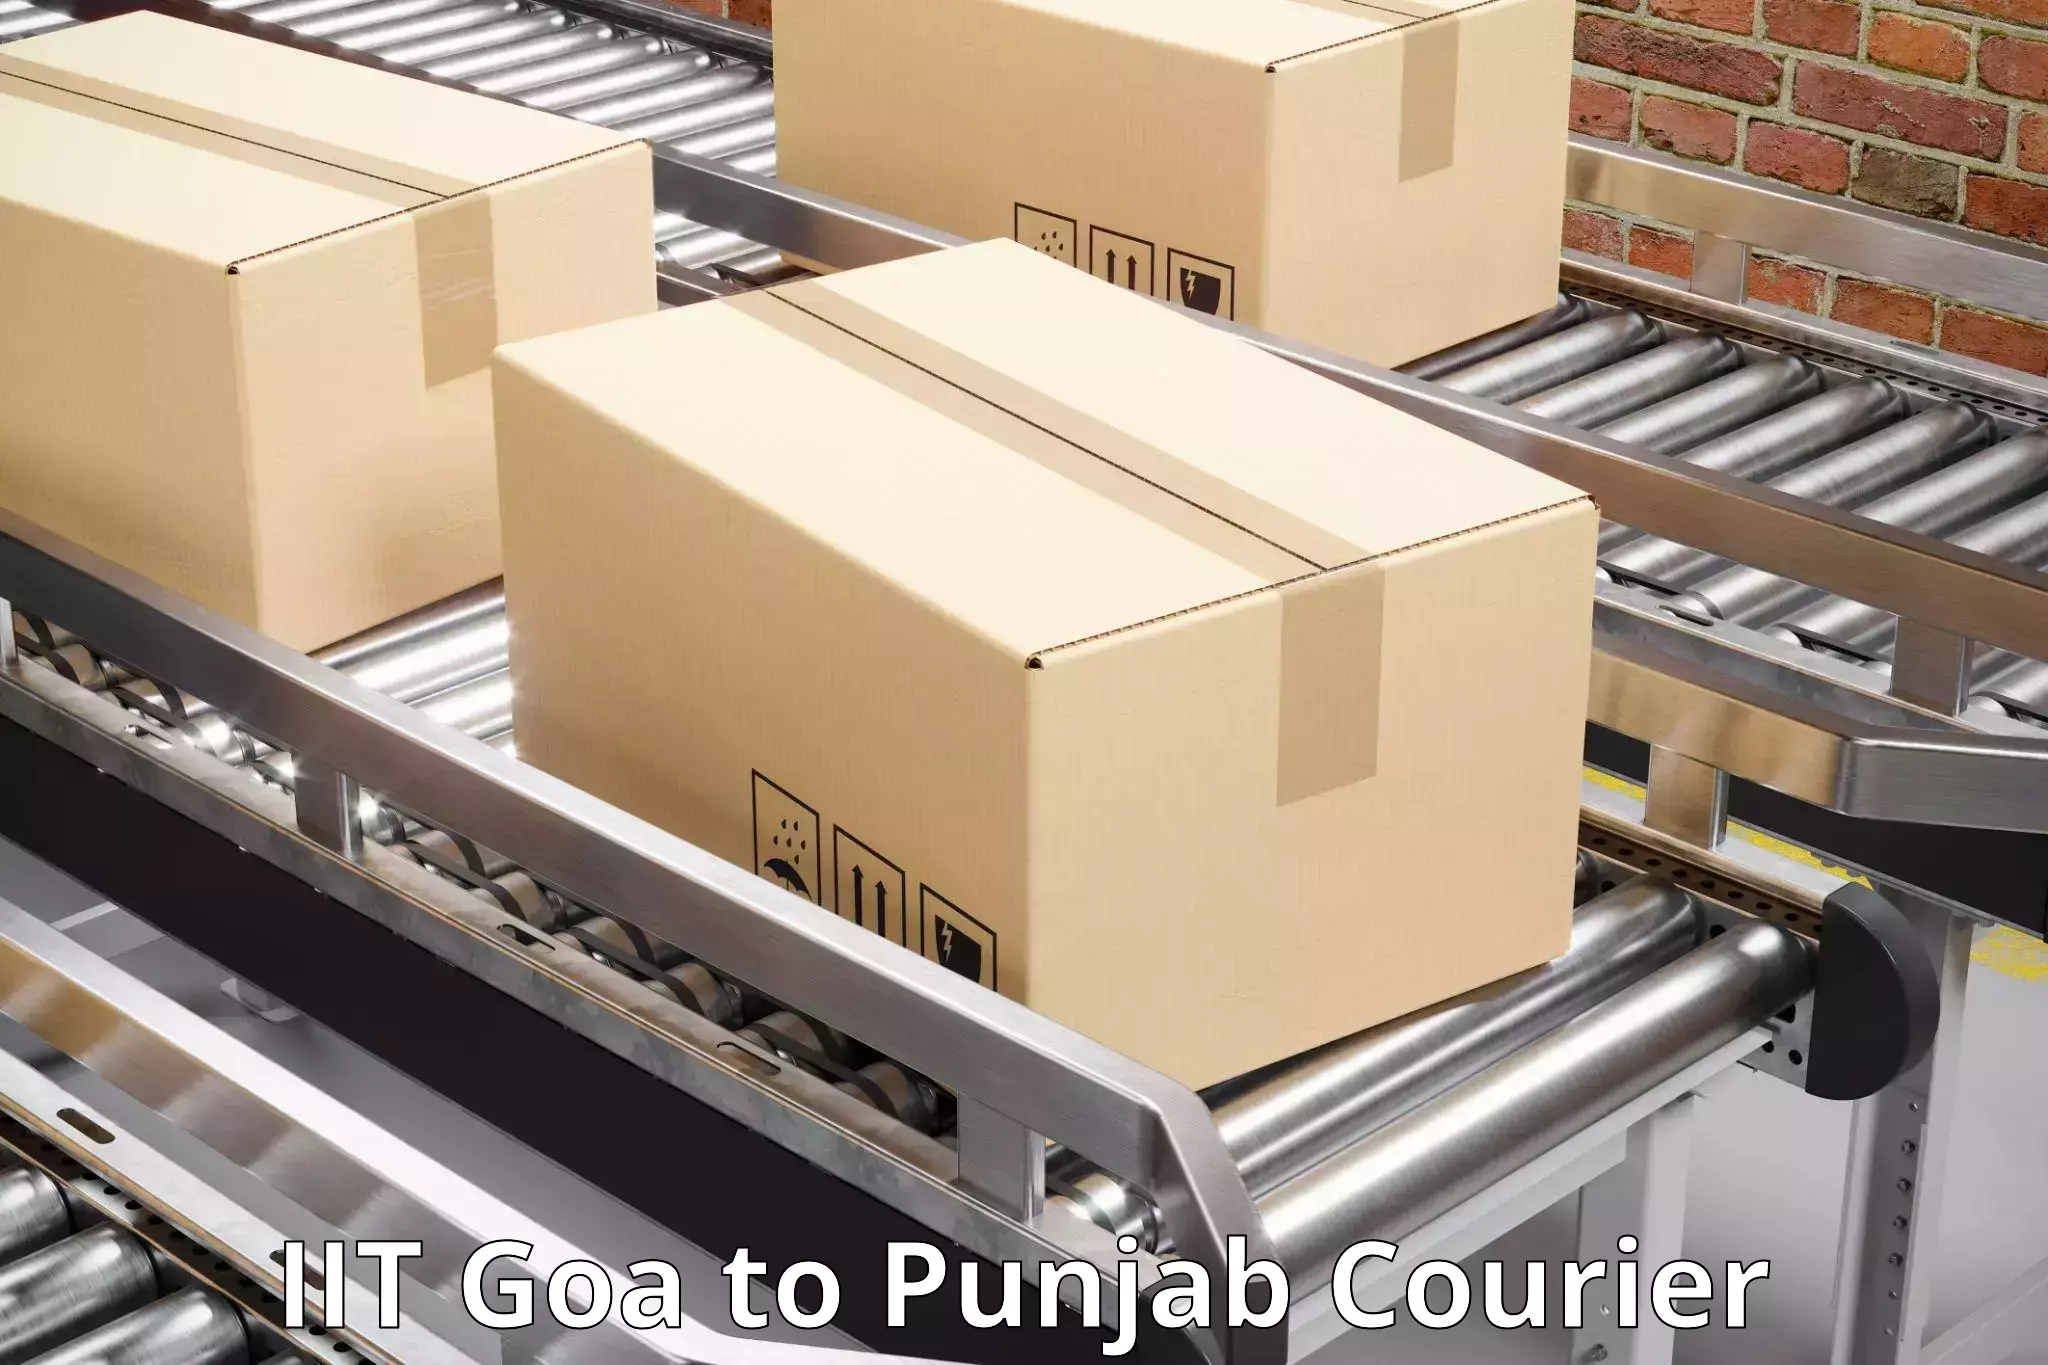 Multi-service courier options in IIT Goa to Patti Tarn Tara